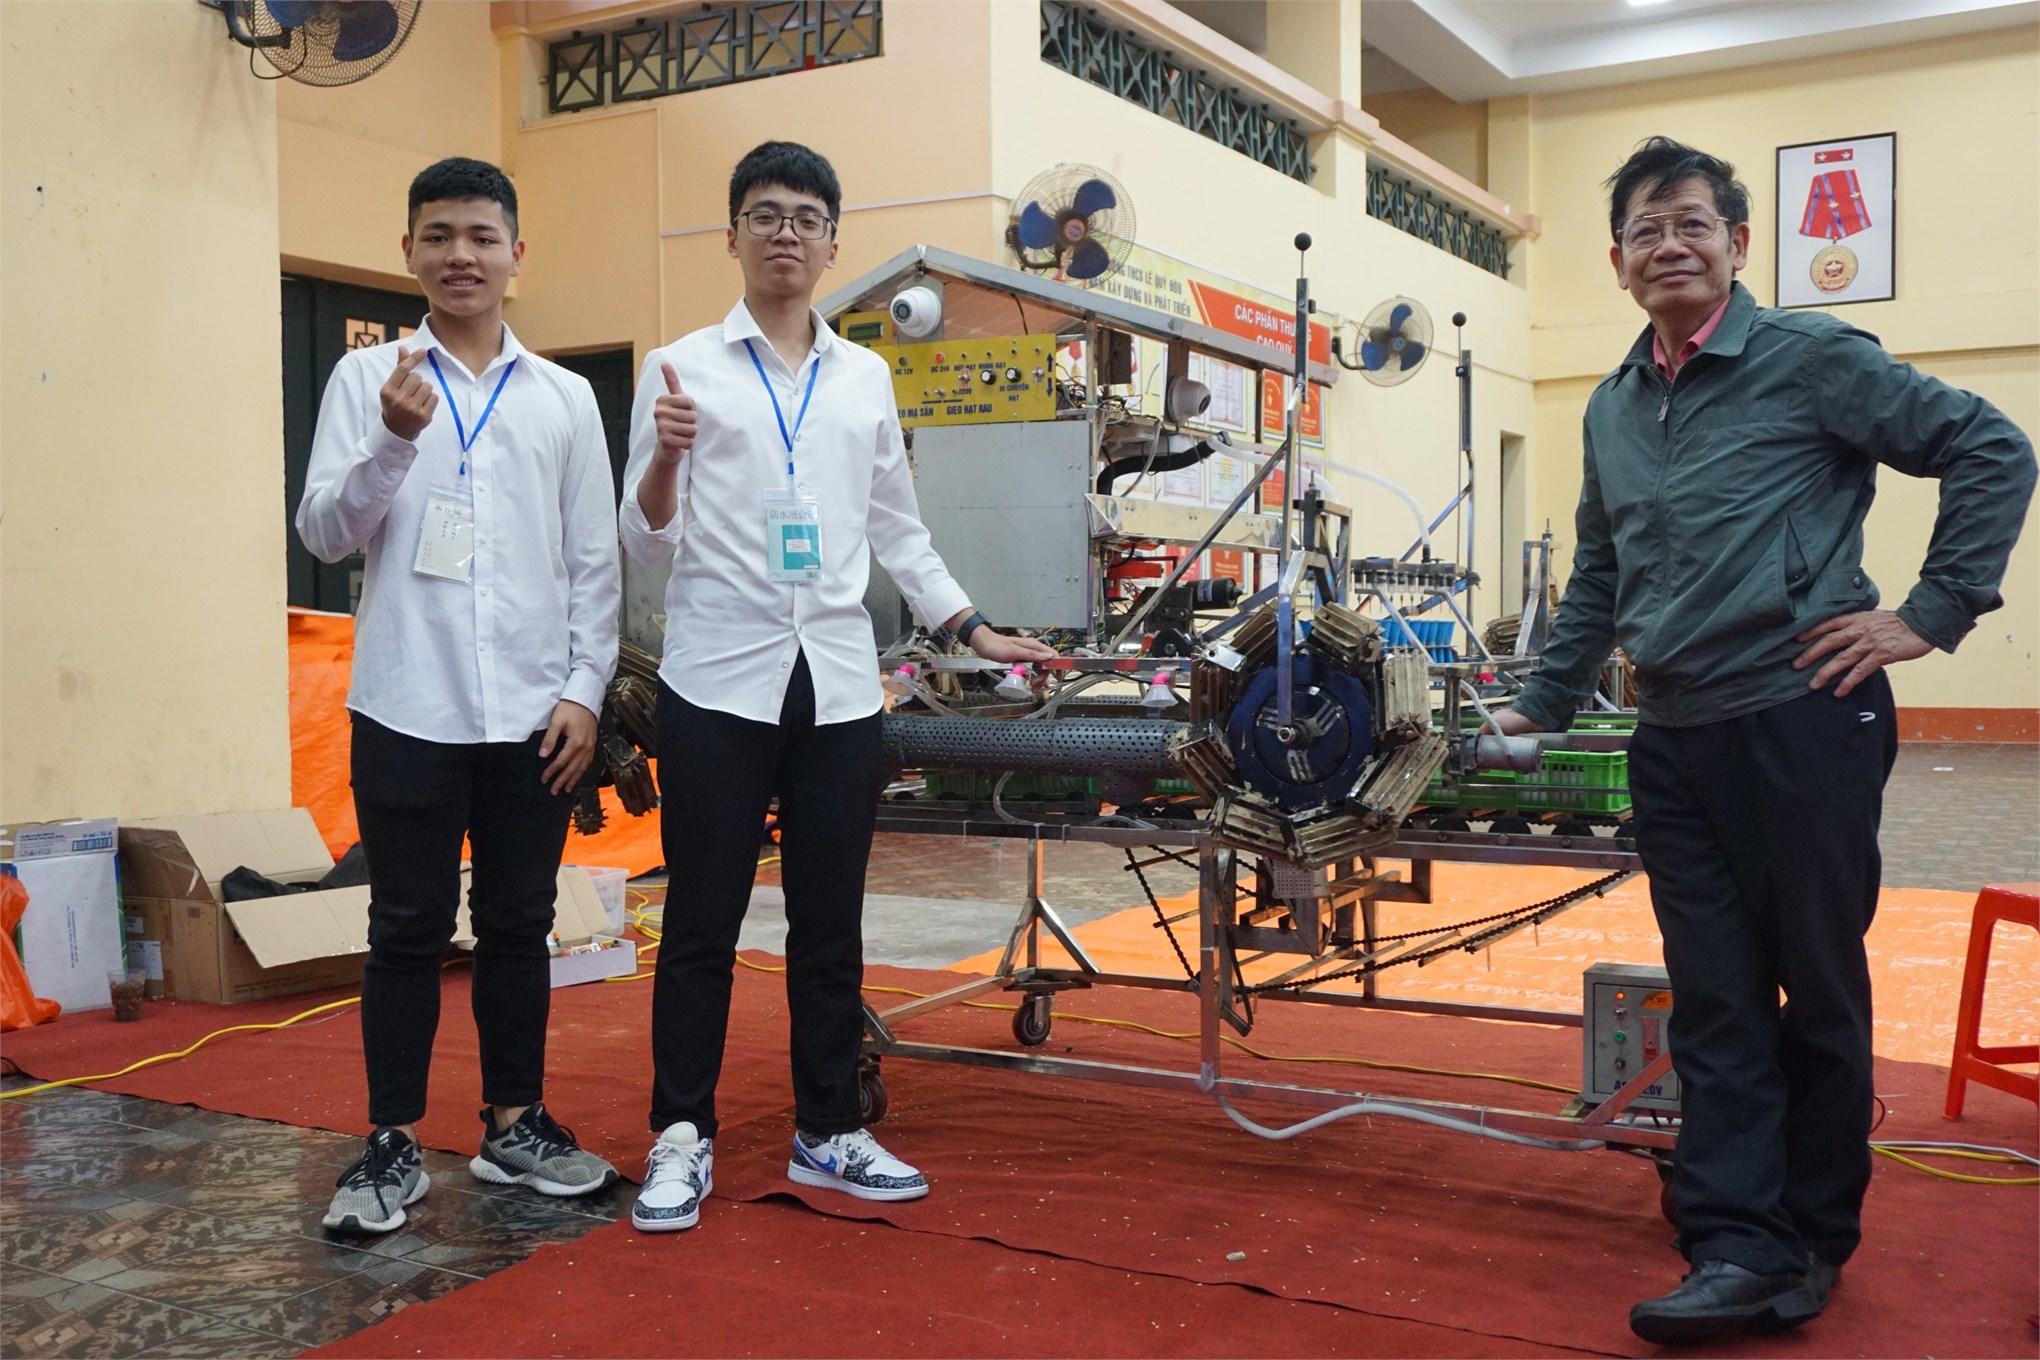 02 thí sinh đạt giải trong cuộc thi khoa học kỹ thuật quốc gia 2020-2021 được tuyển thẳng vào Khoa Công nghệ ô tô Trường Đại học Công nghiệp Hà Nội